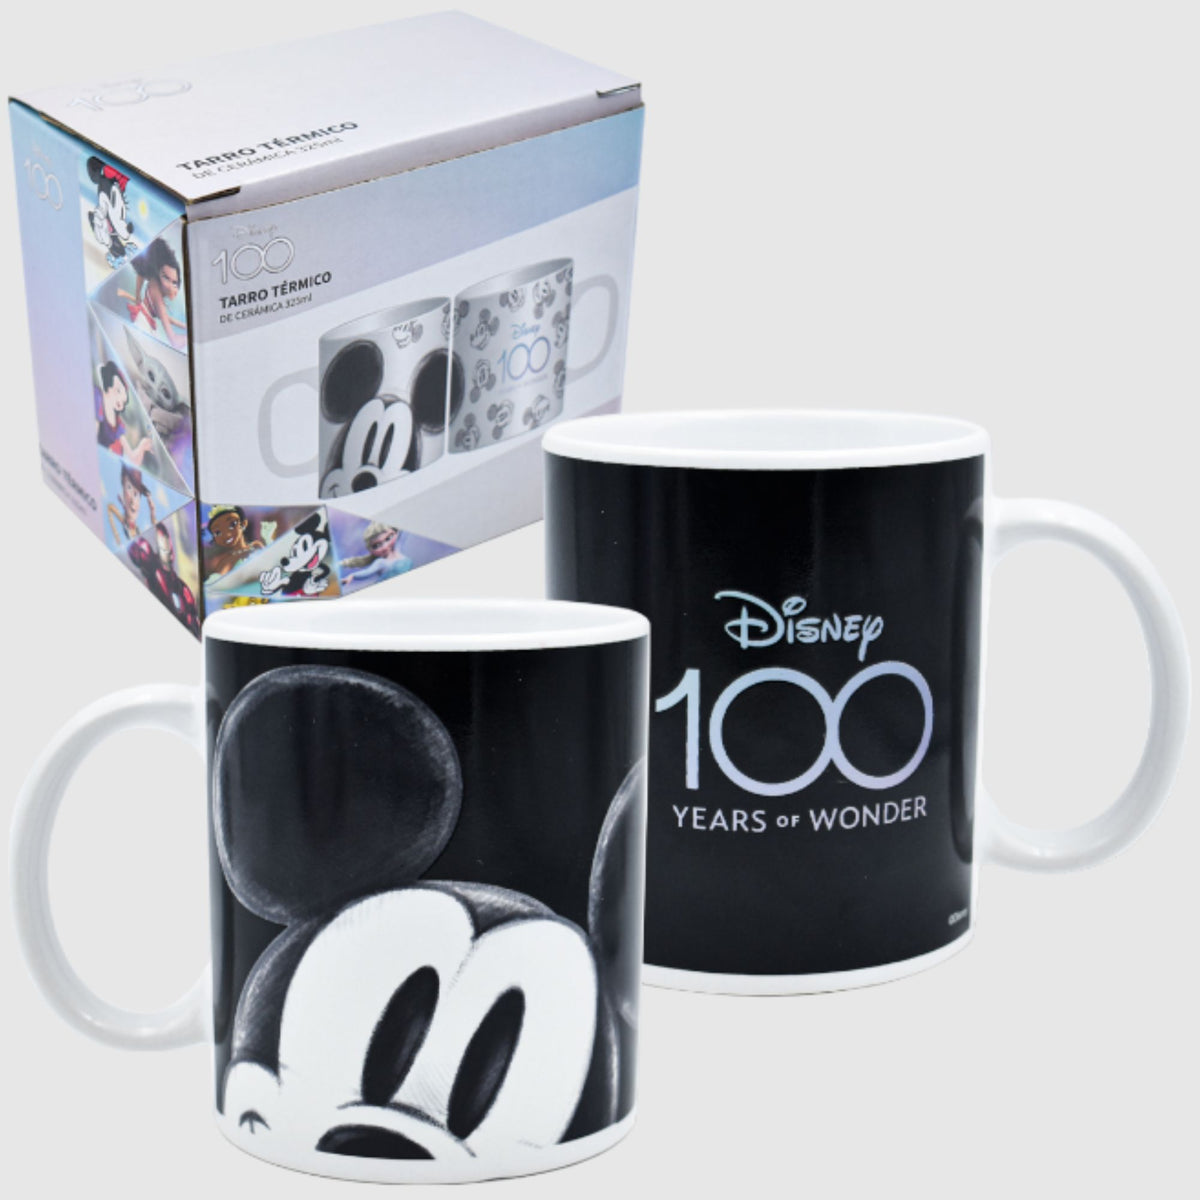 Tazas para regalar a los fans de Disney, ¡les encantarán!